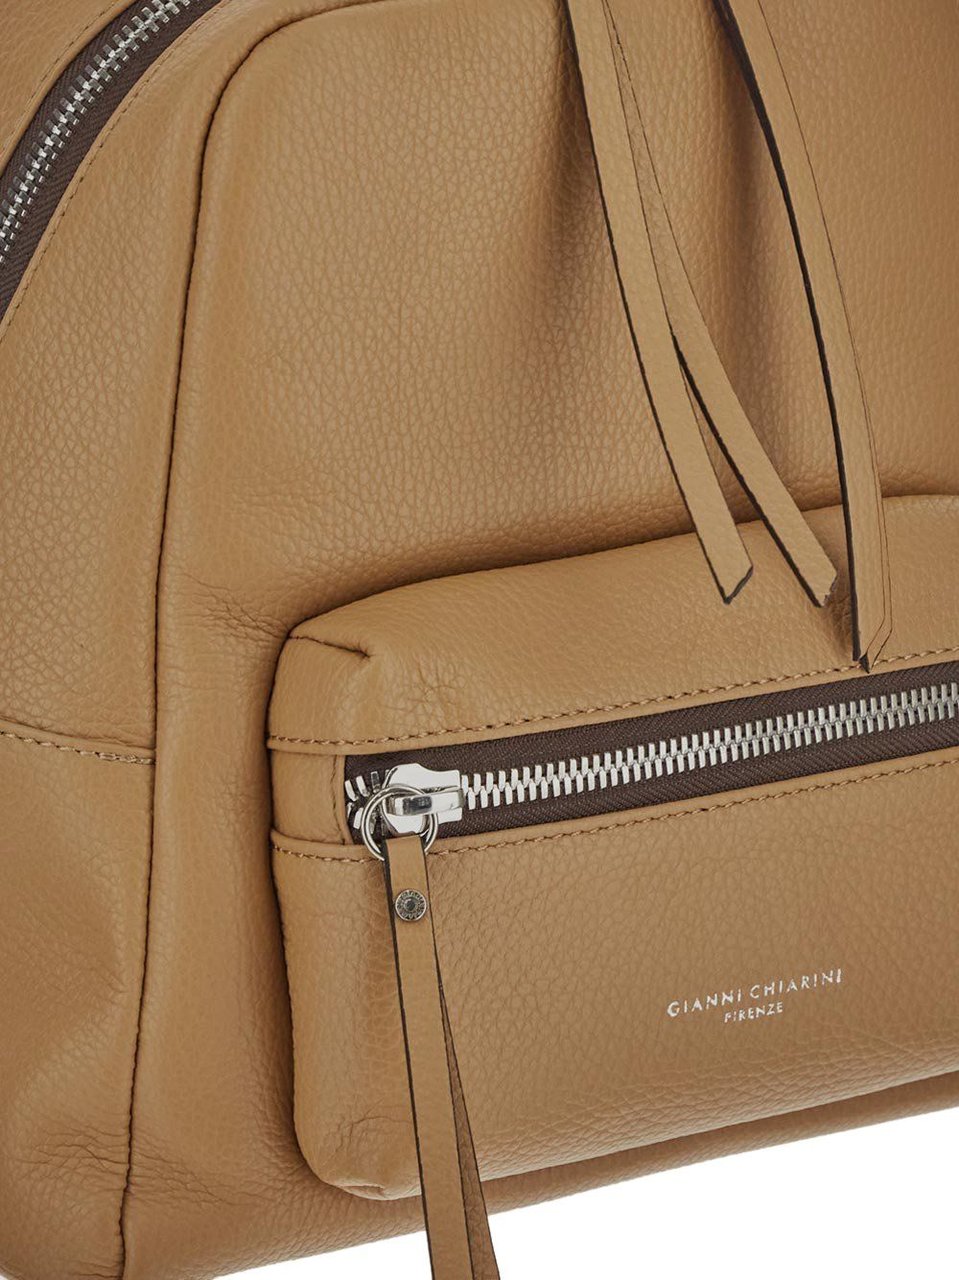 Gianni Chiarini Leather Backpack Beige